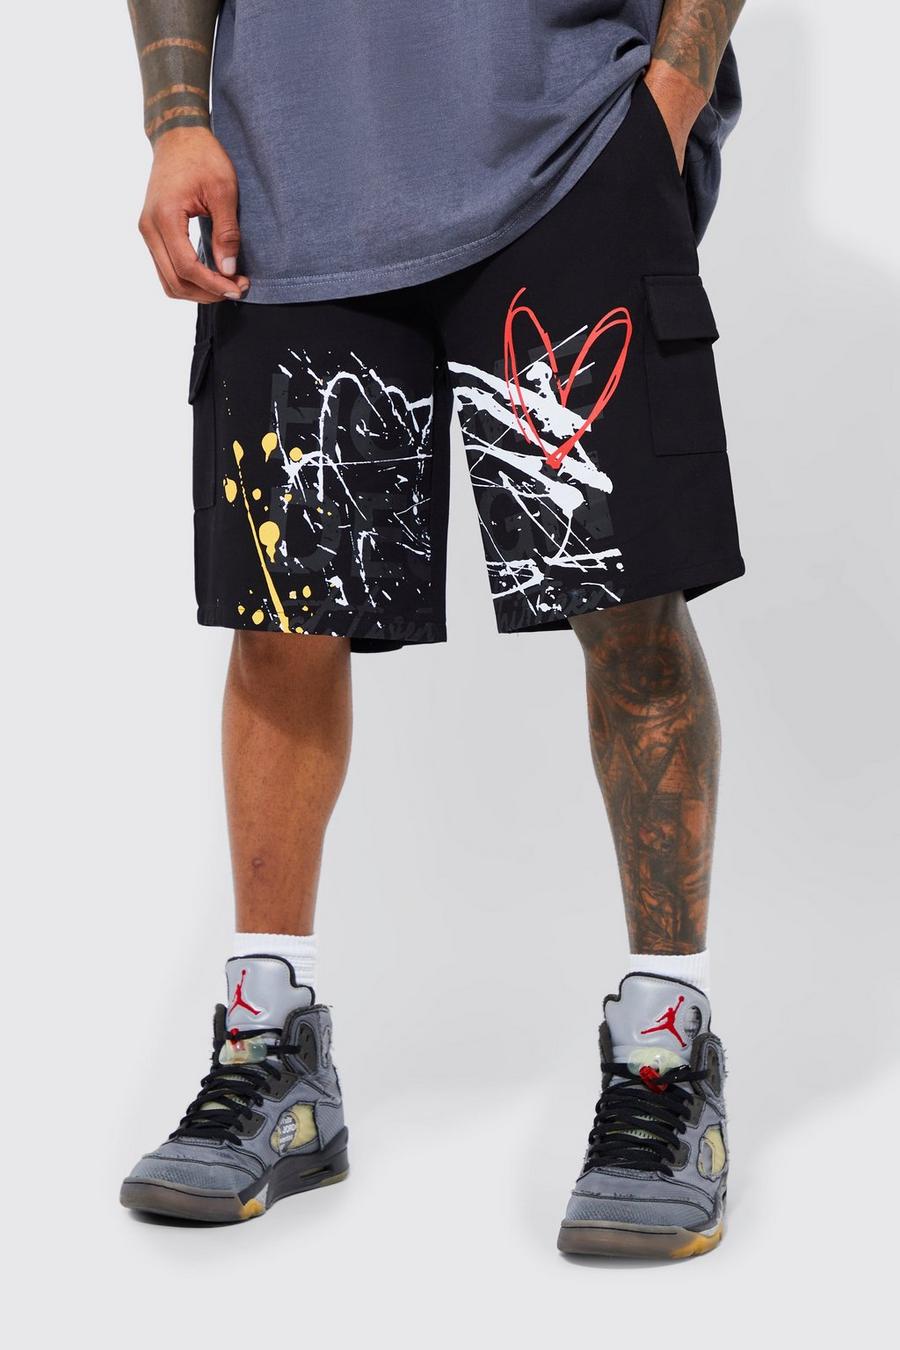 Lockere Cargo-Shorts mit elastischem Bund und Farbspritzern, Black